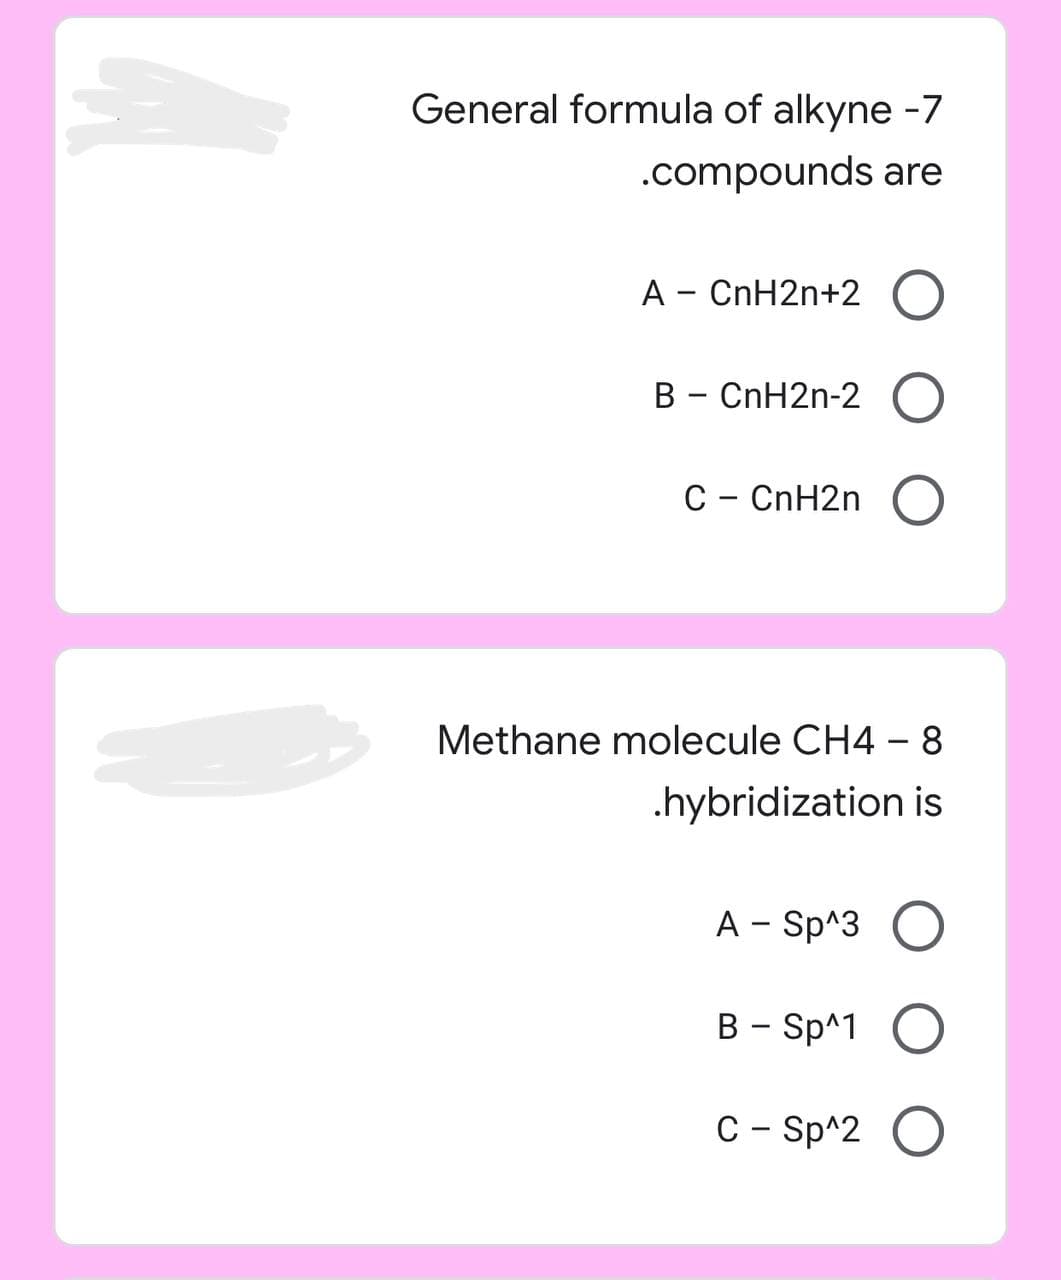 General formula of alkyne -7
.compounds are
A - CnH2n+2 O
B - CnH2n-2 O
C - CnH2n O
Methane molecule CH4 - 8
.hybridization is
A- Sp^3 O
B - Sp^1 O
C - Sp^2 O